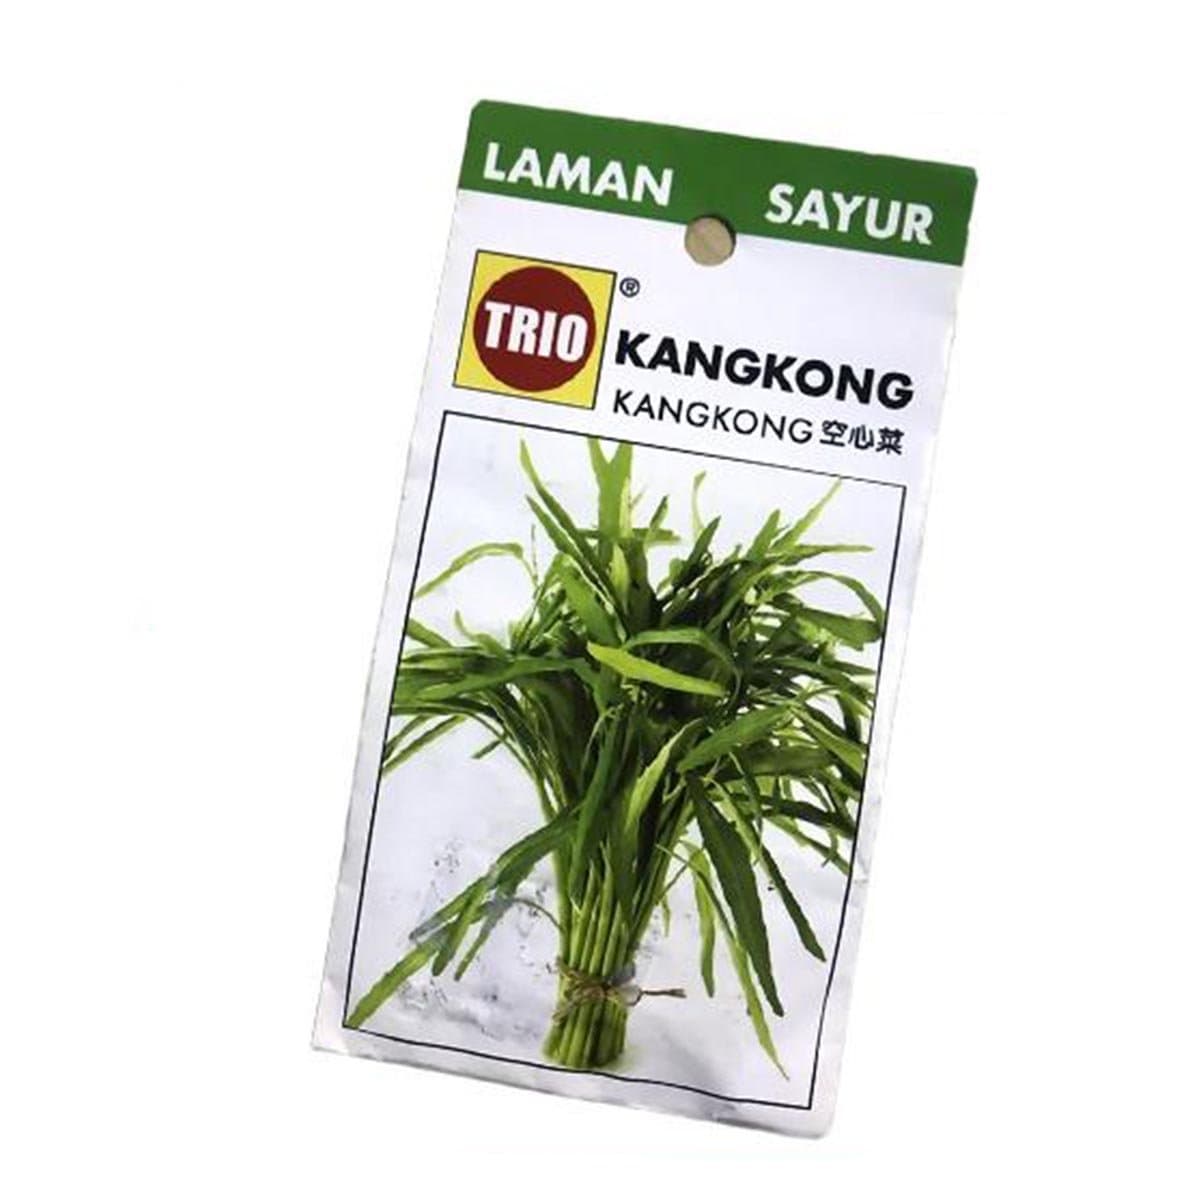 Trio Kangkong Vegetable Seeds Benih Sayur